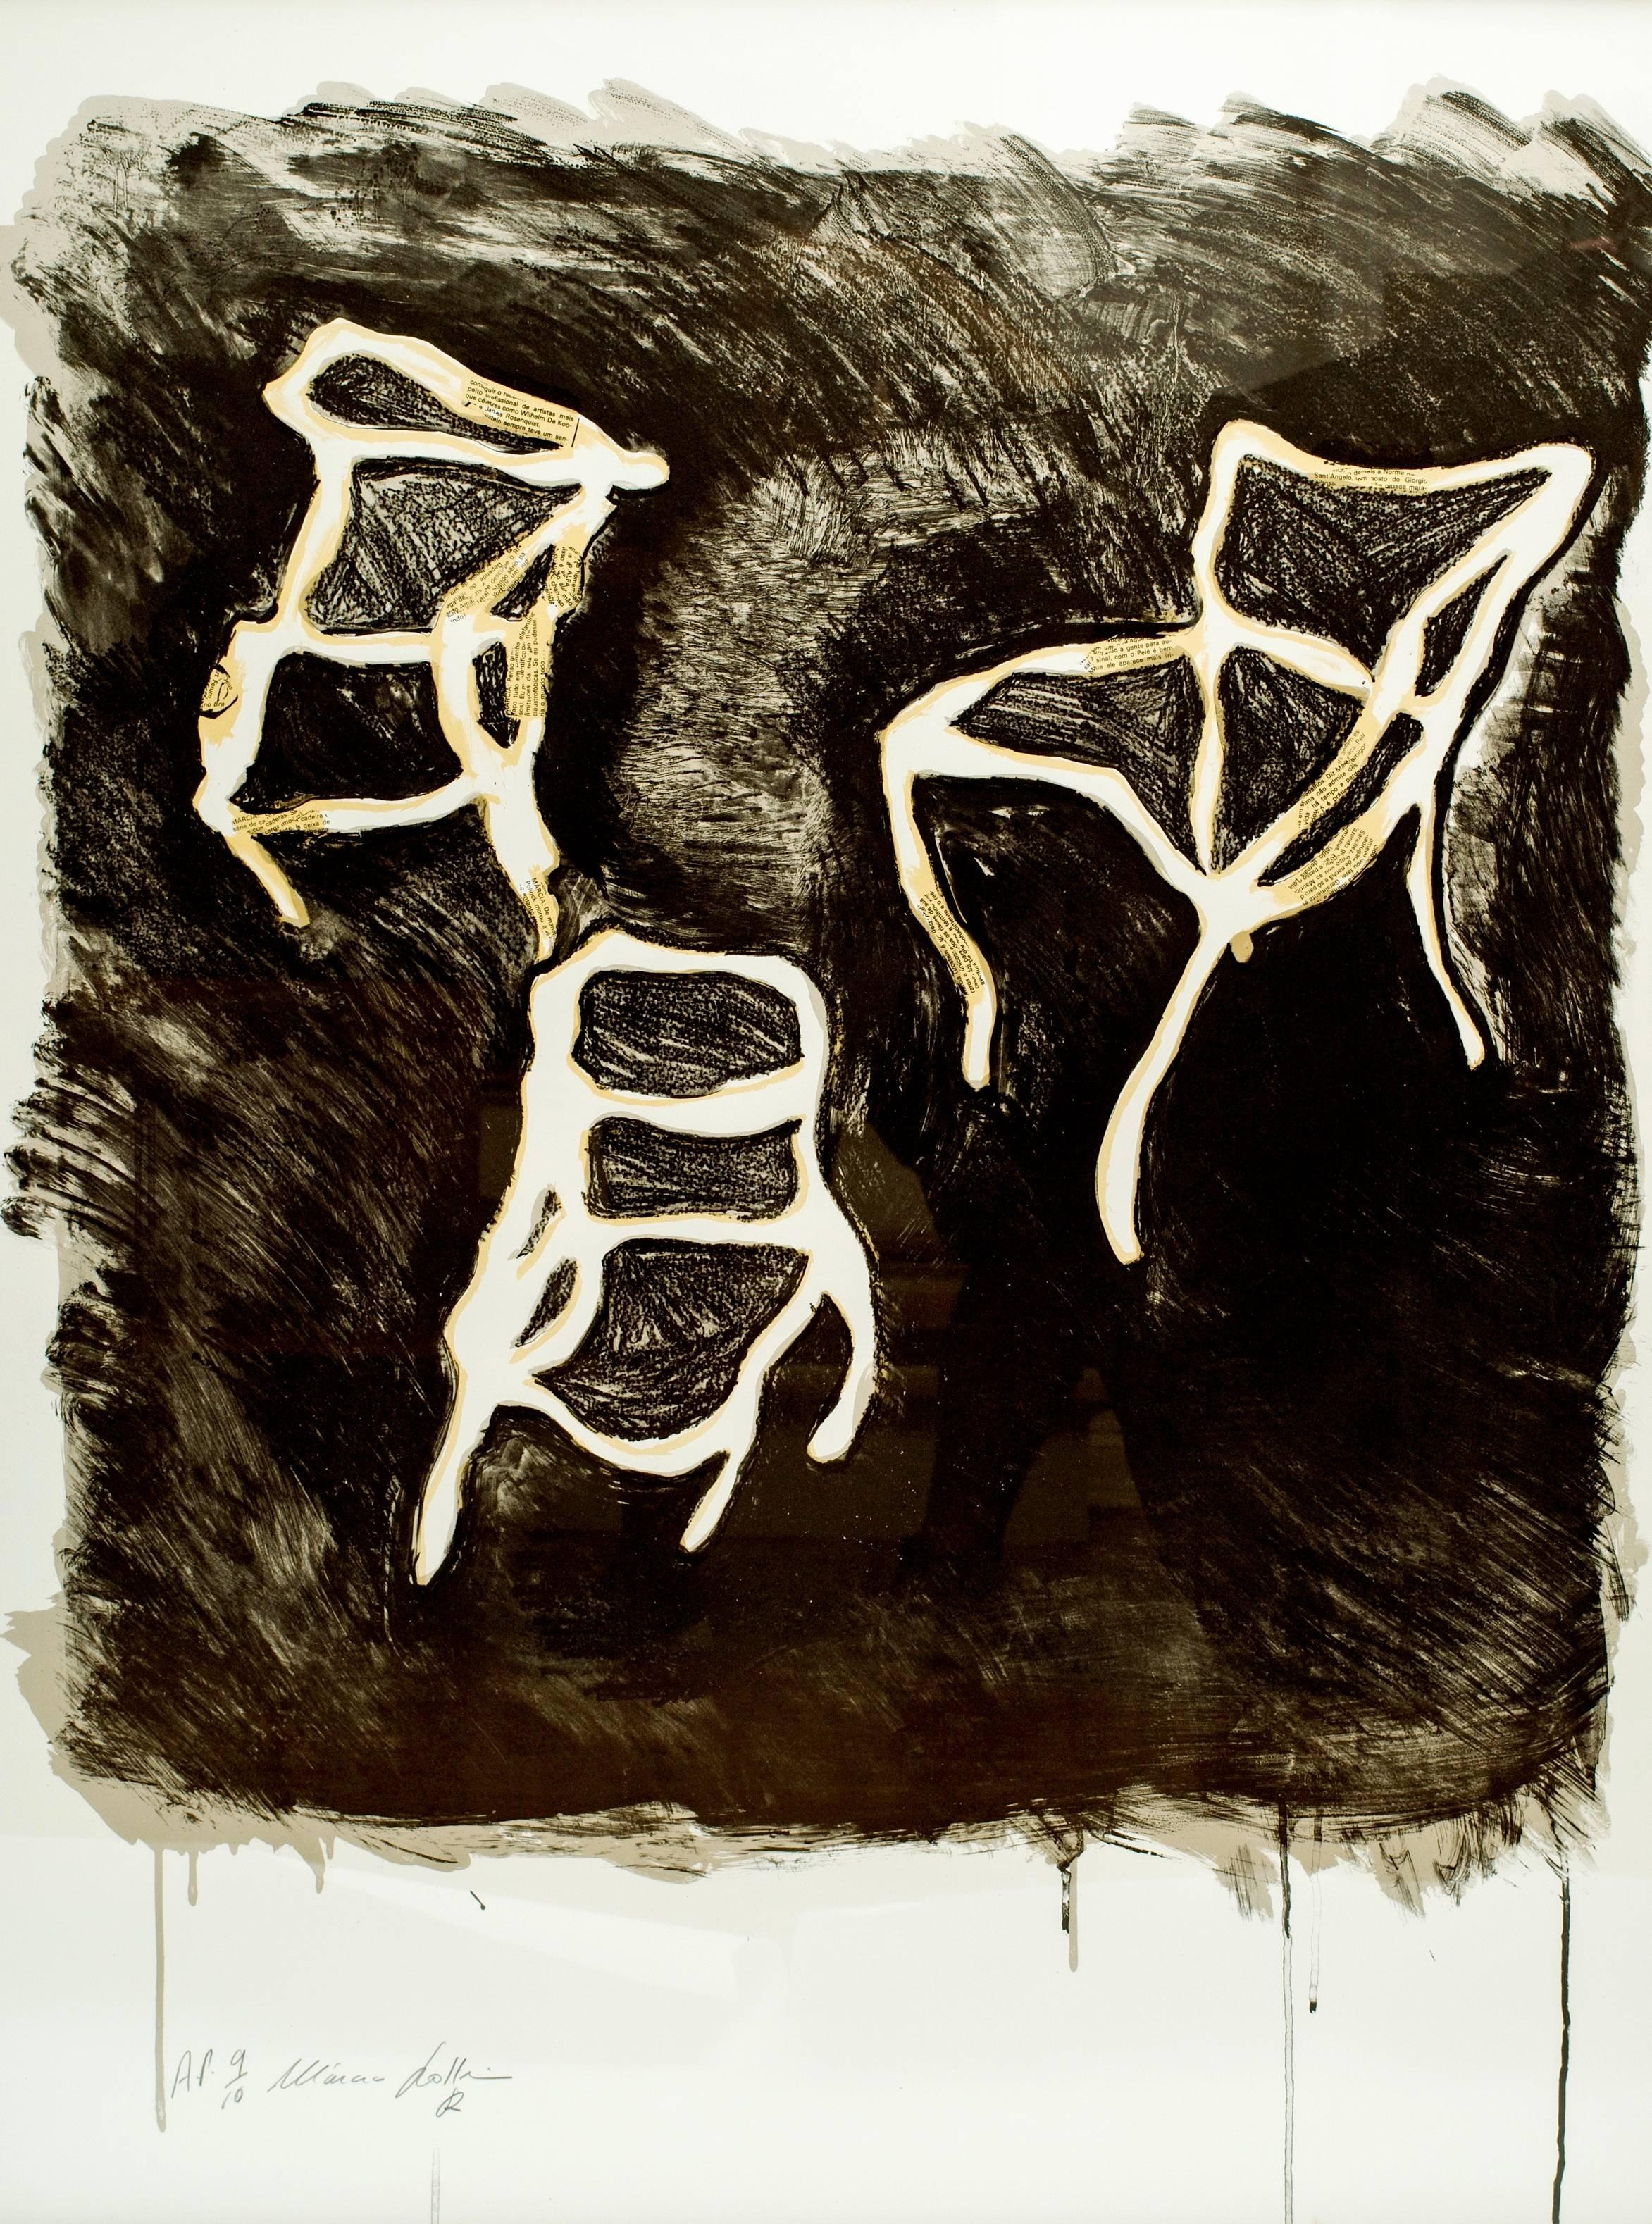 Fabuleuse et saisissante sérigraphie de chaises par l'artiste cotée Marcia Grostein (brésilienne-américaine née en 1949) de trois chaises abstraites avec un collage de papier journal qui montre des noms d'artistes comme Willem de Kooning et James